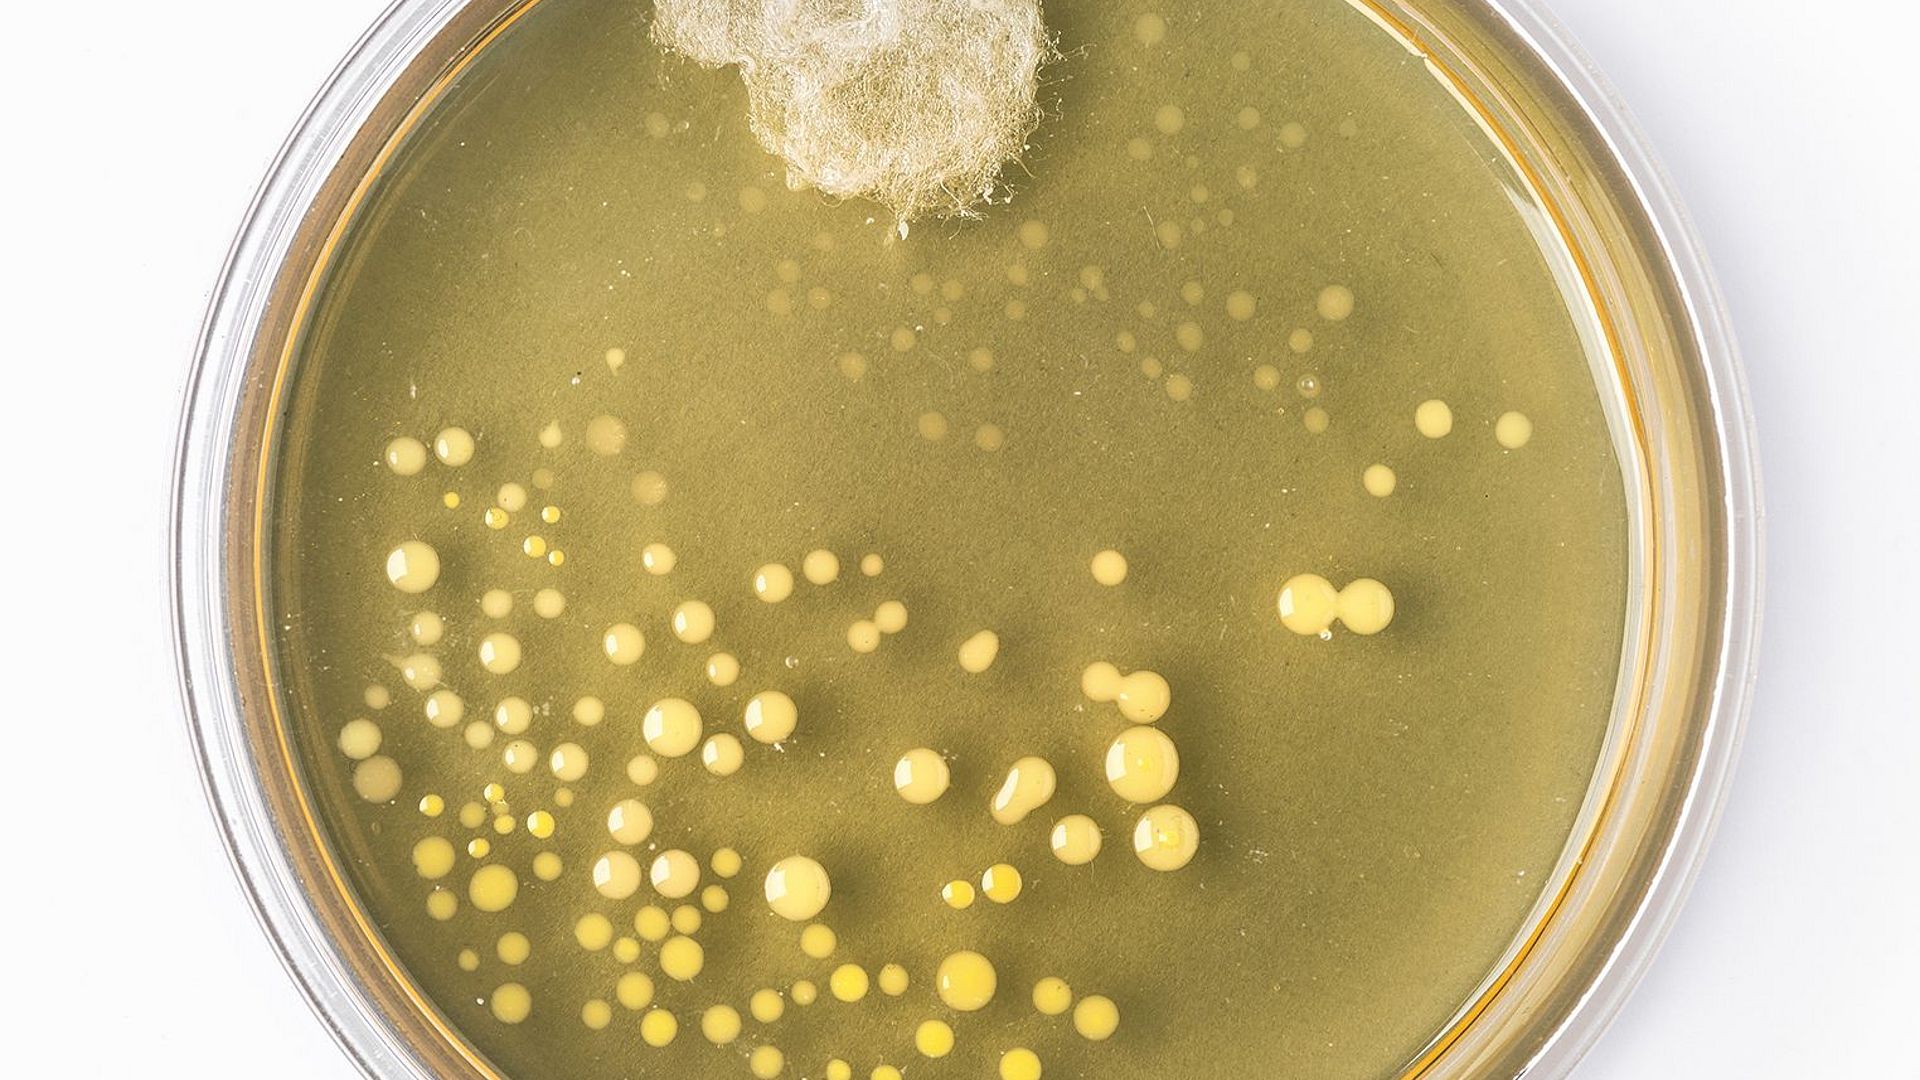 Nachbildung des berühmten Original-Petrischale von Alexander Fleming mit Schimmelpilz und Bakterienkolonien.